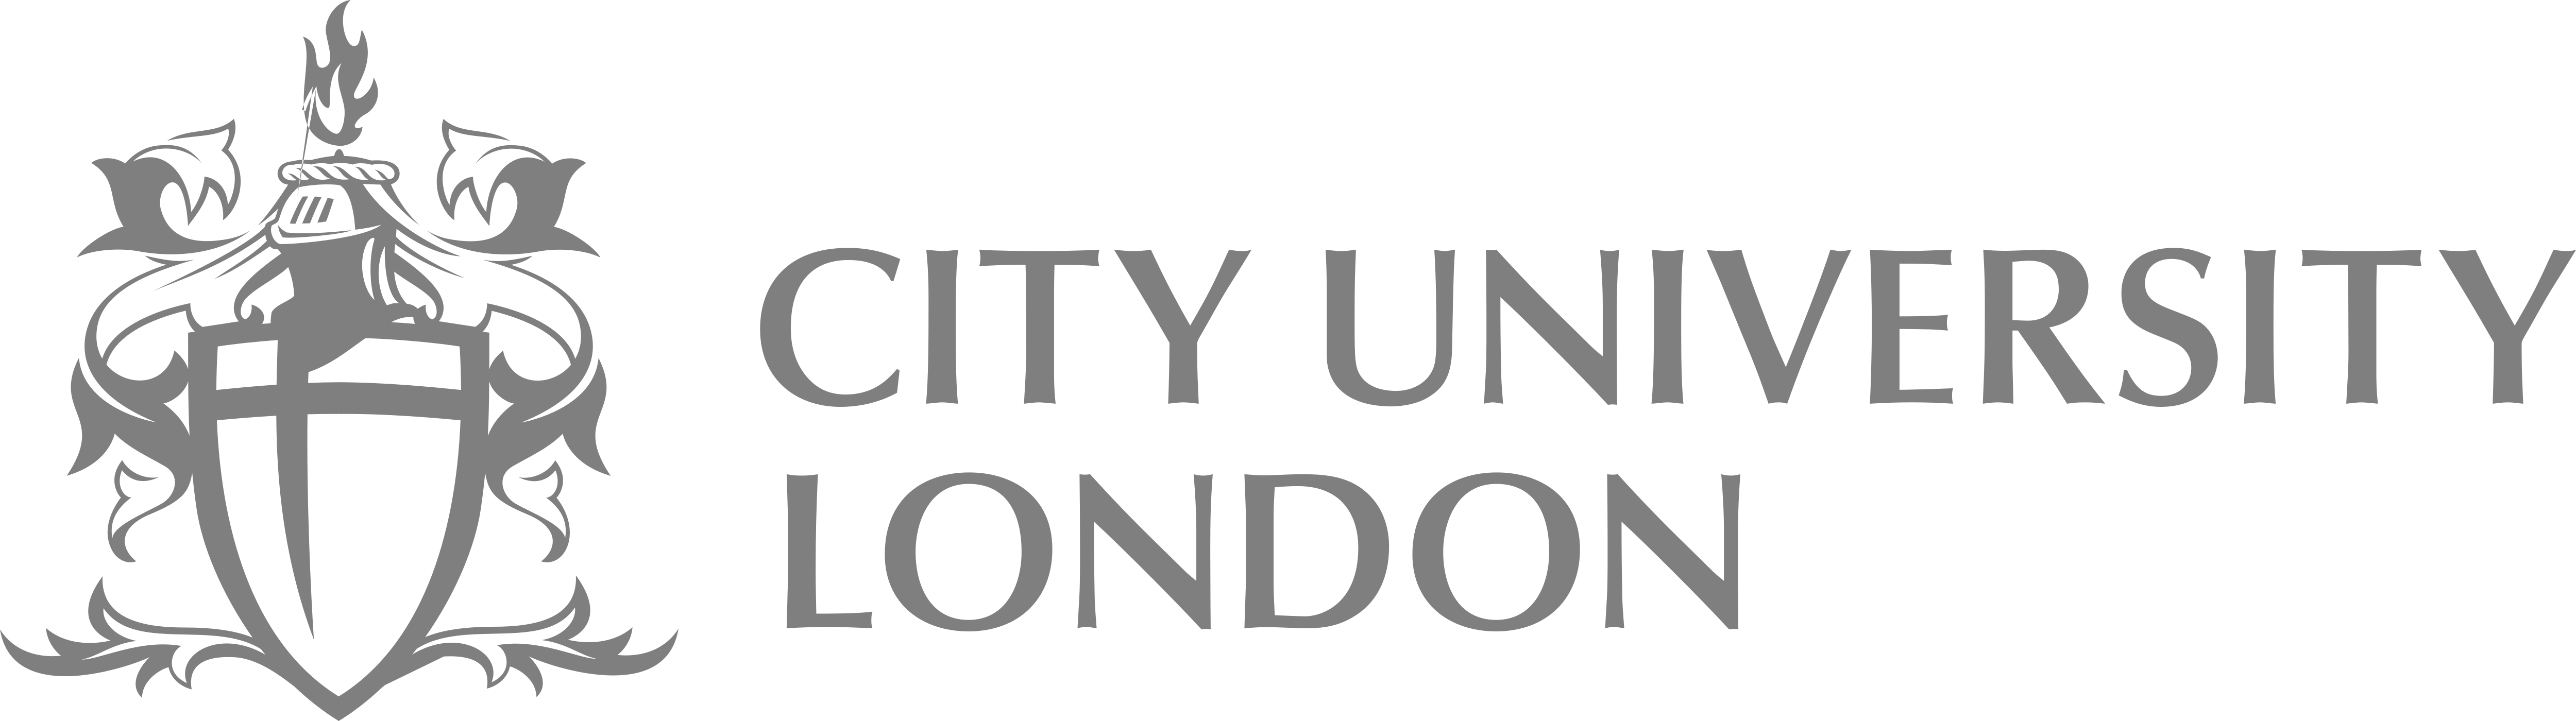 city, university of london